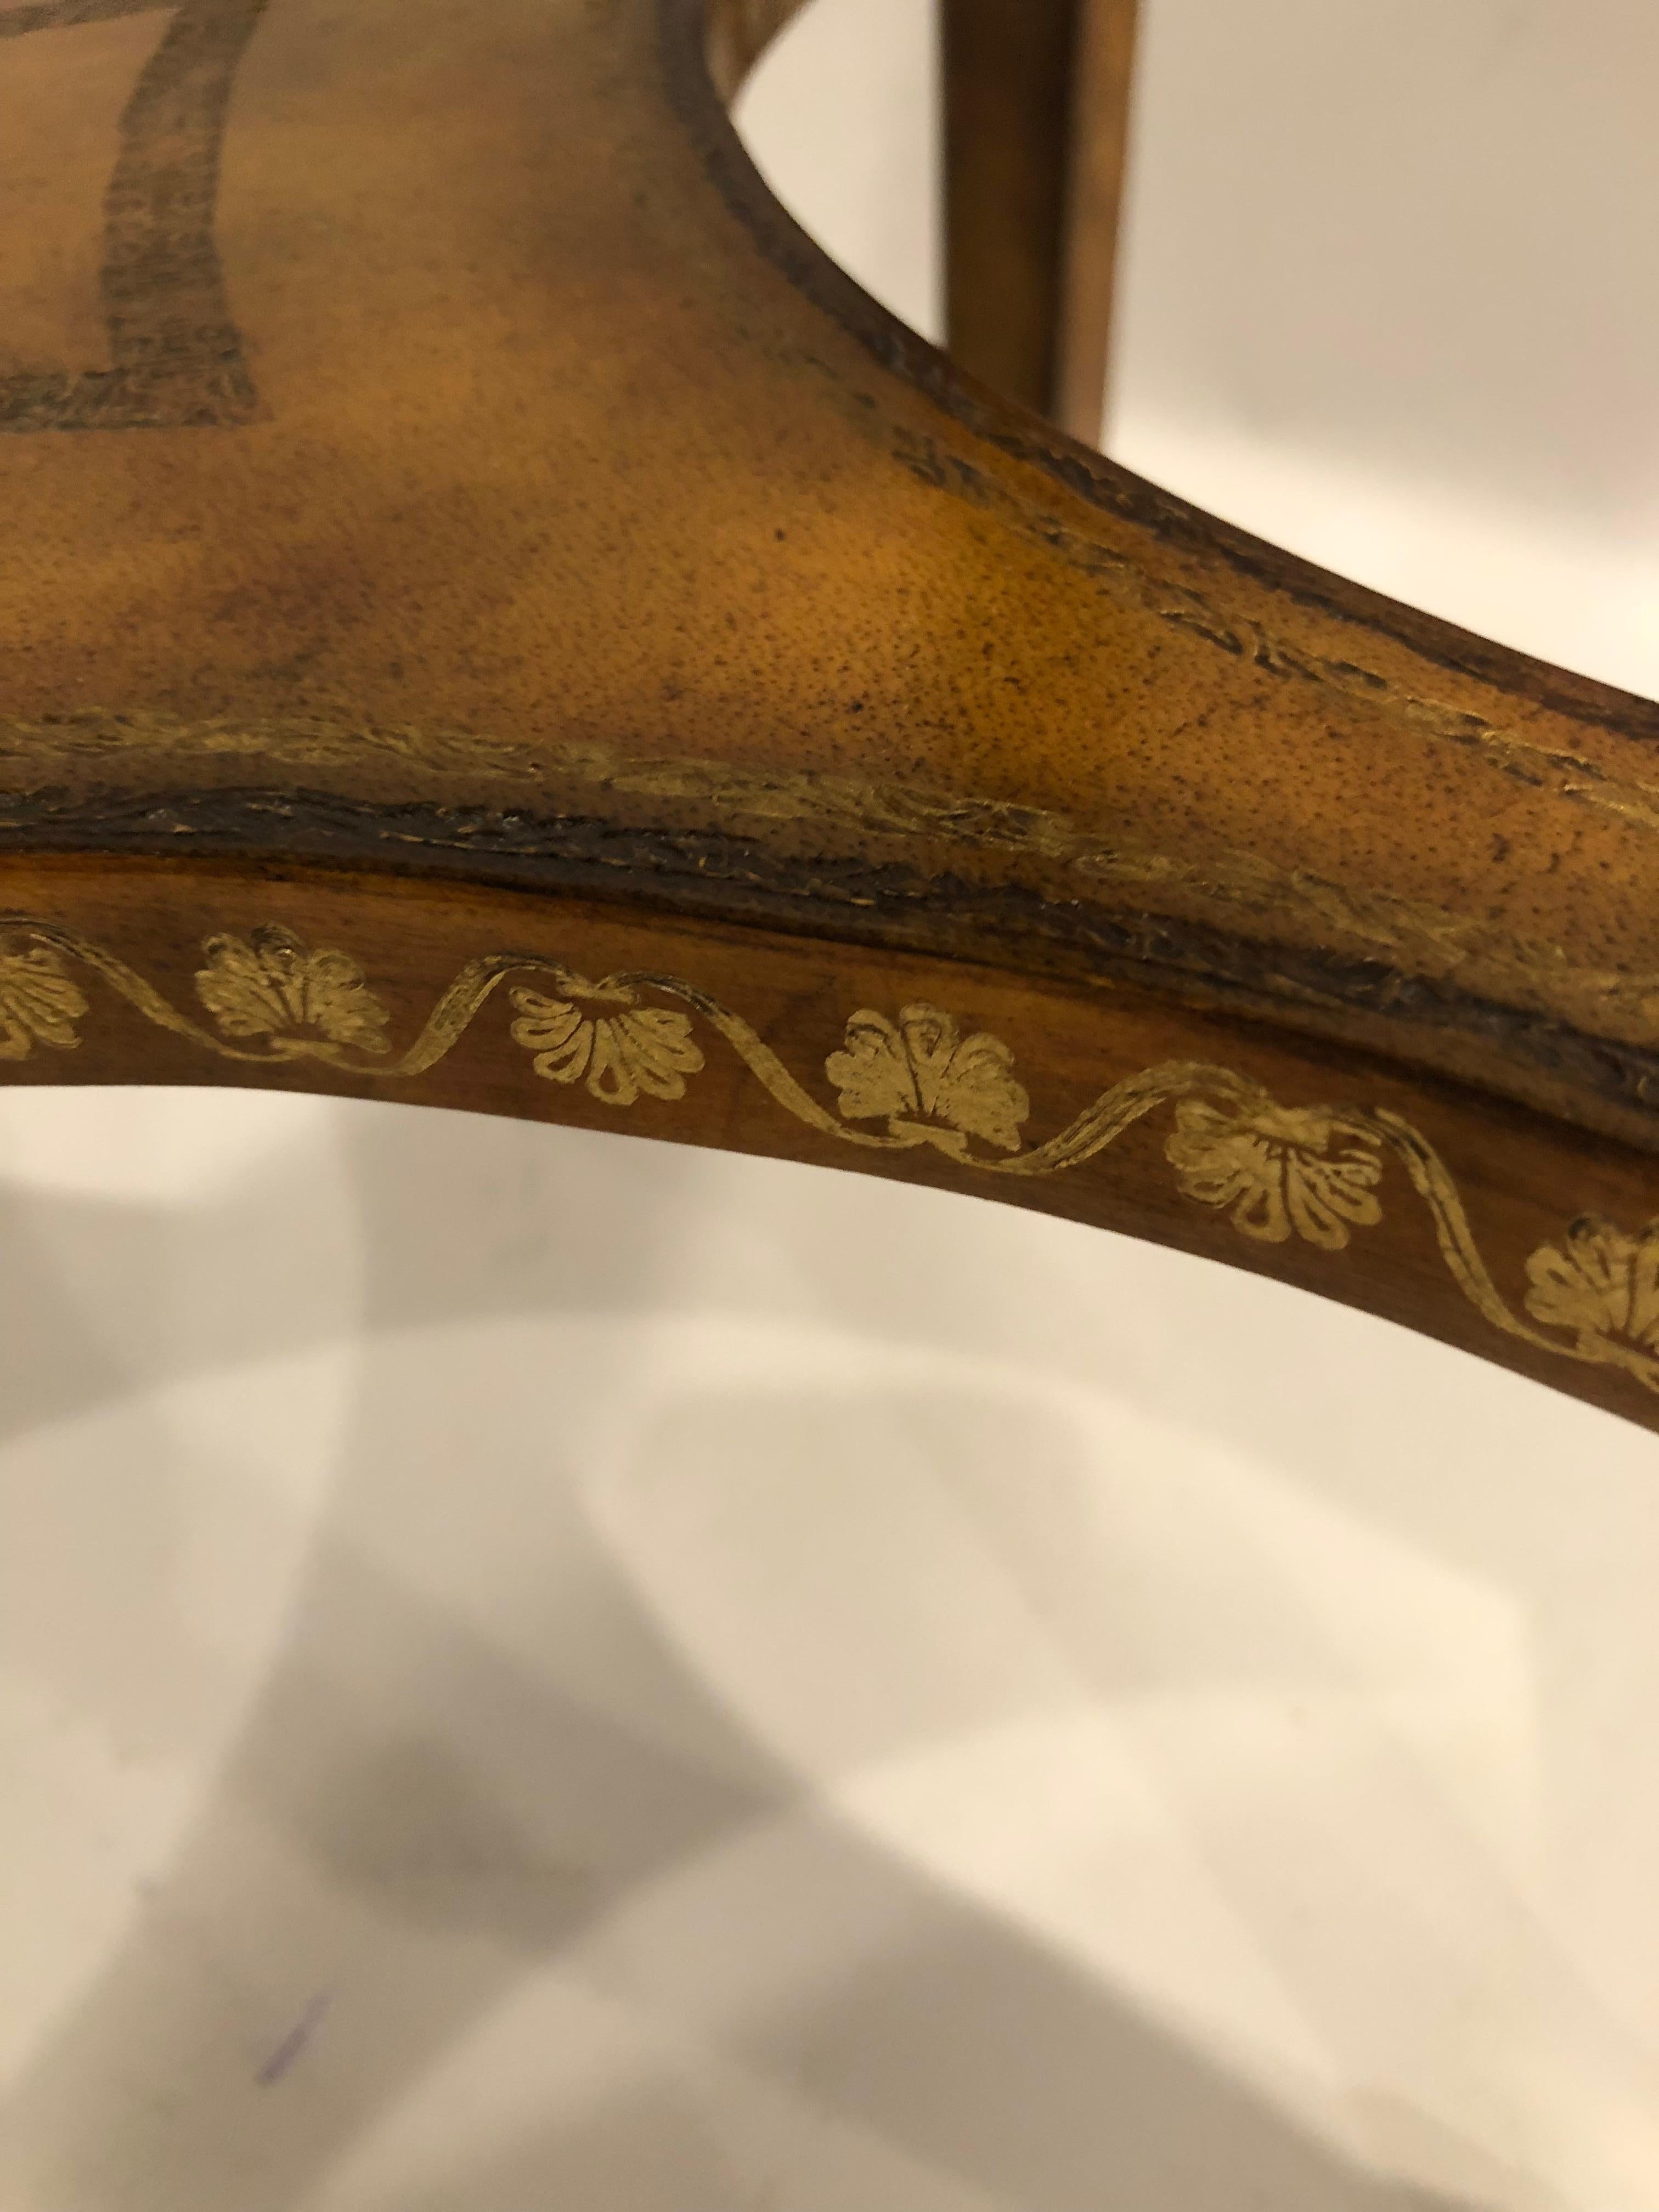 Magnifique table d'appoint ronde distincte de Maitland Smith avec leur signature de dessus en cuir gaufré, enveloppant le cuir partout, palette de couleurs miel chaudes et agréables avec des décorations de couleur bronze, même sur les pieds.